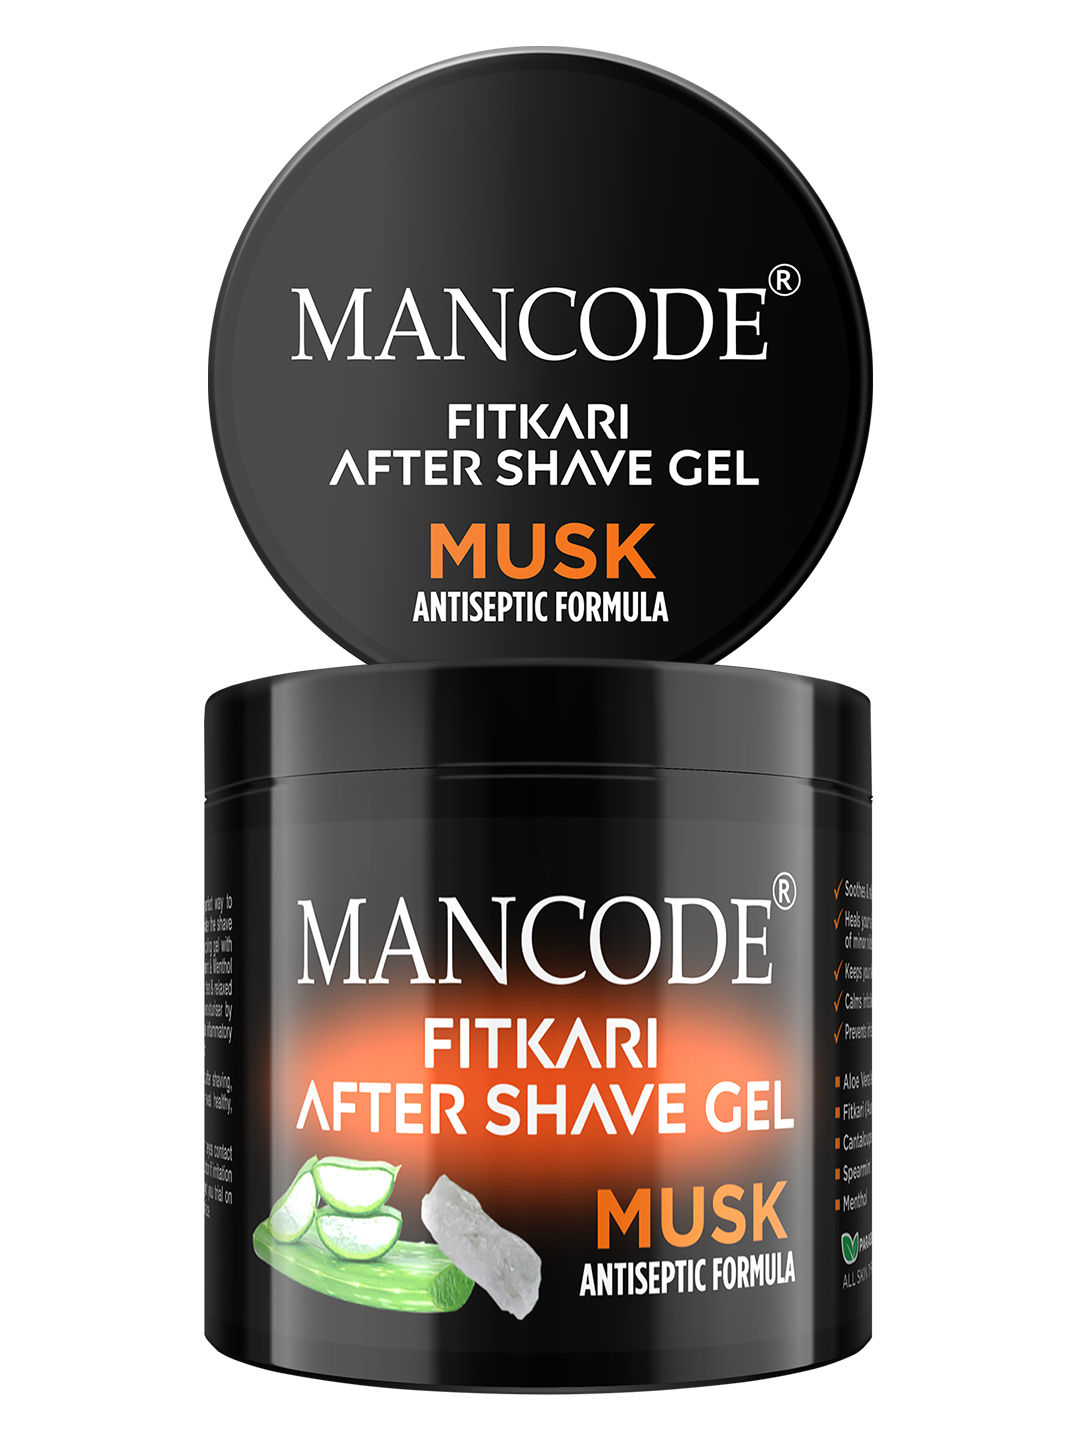 ManCode Fitkari After Shave Gel For Men Musk Antiseptic Formula